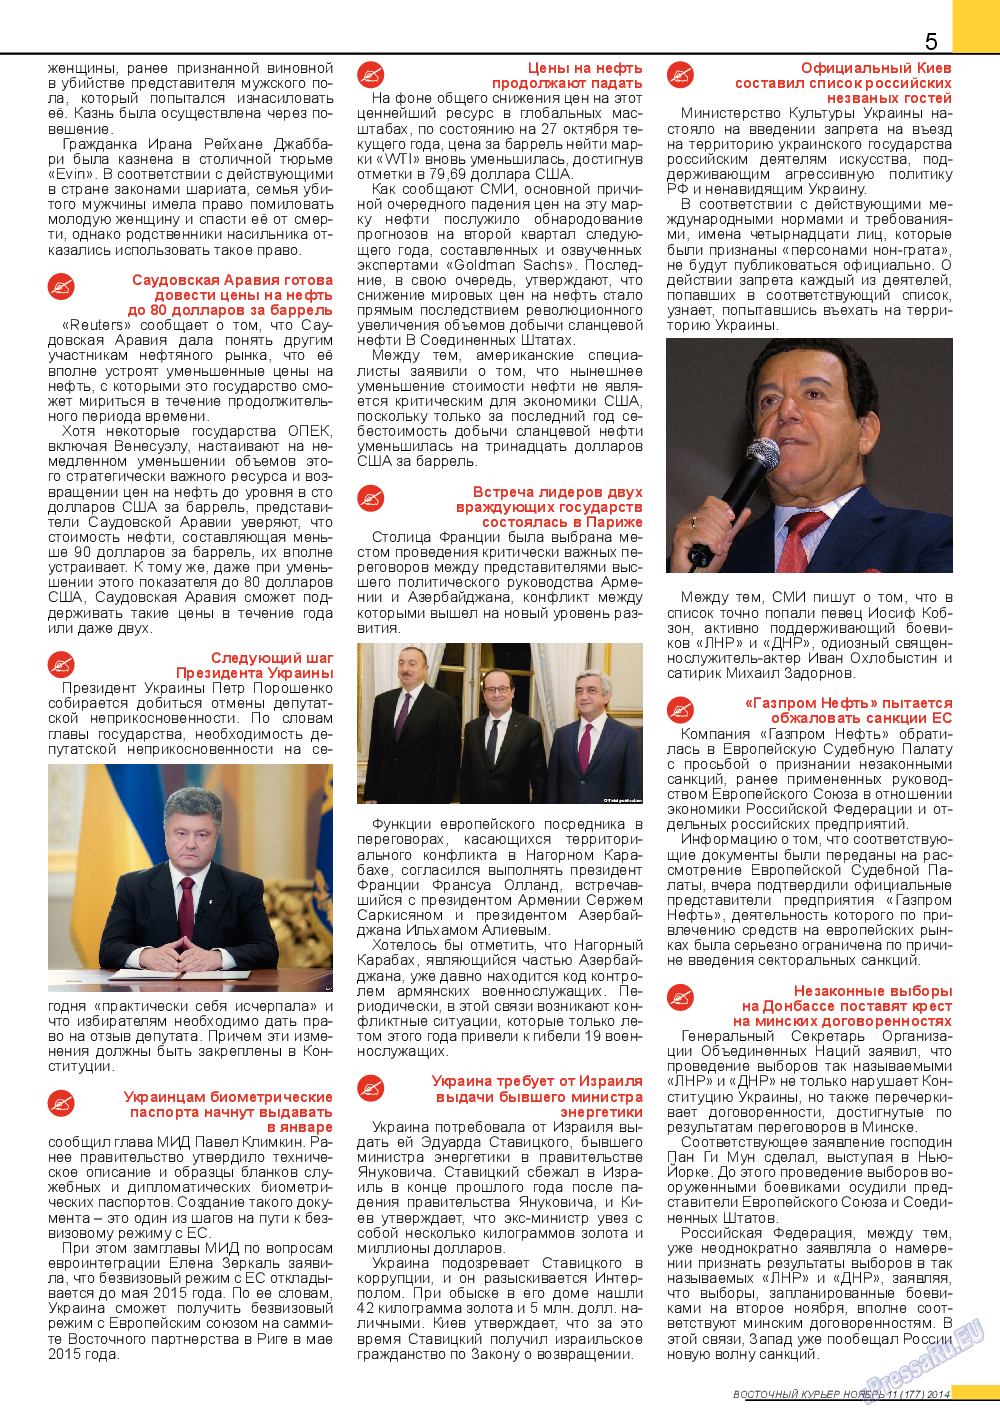 Восточный курьер (журнал). 2014 год, номер 11, стр. 5